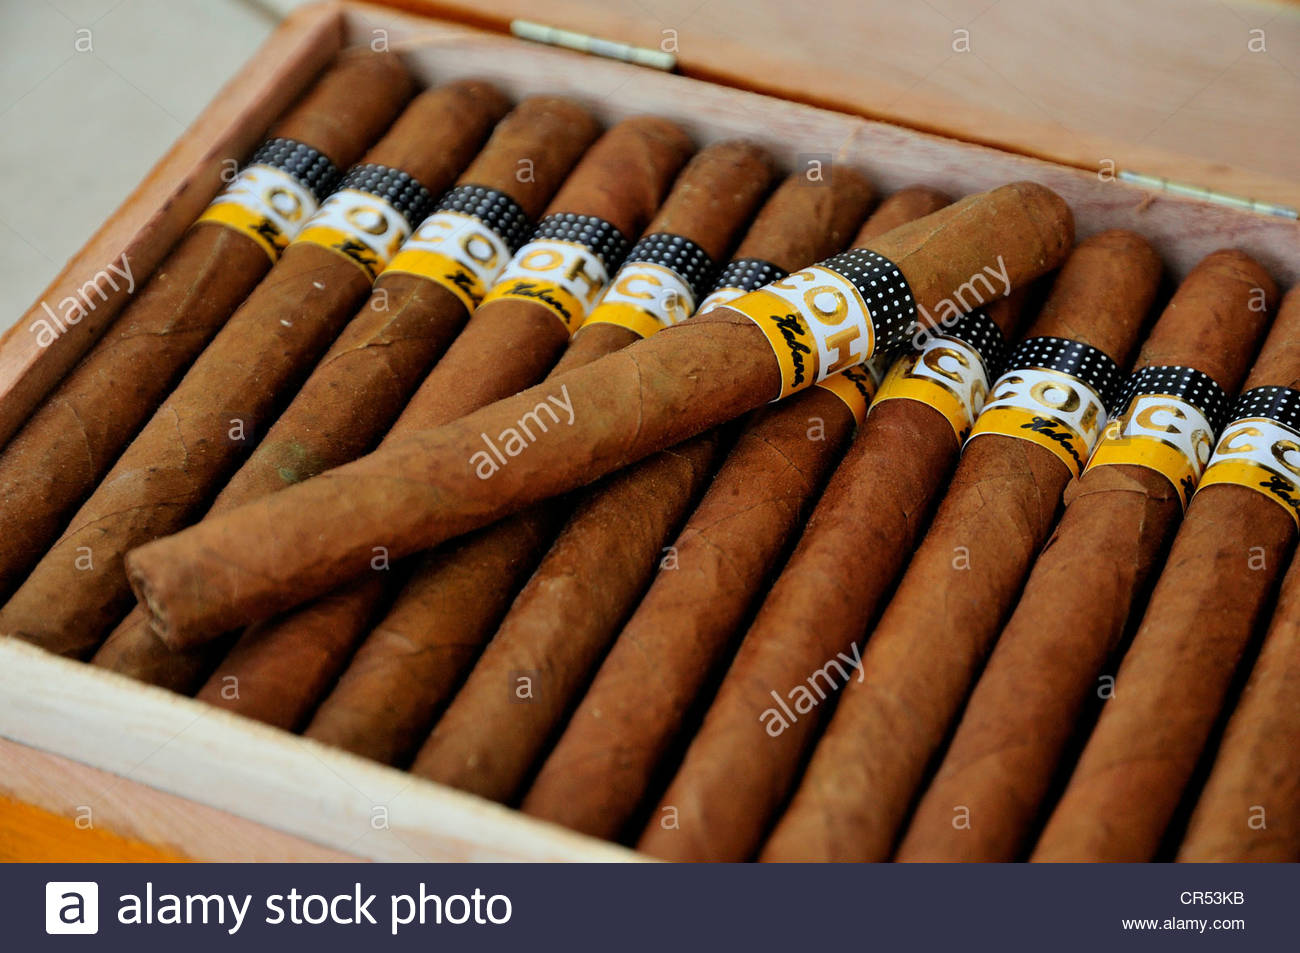 Cohiba Cigar Stock Photos Image